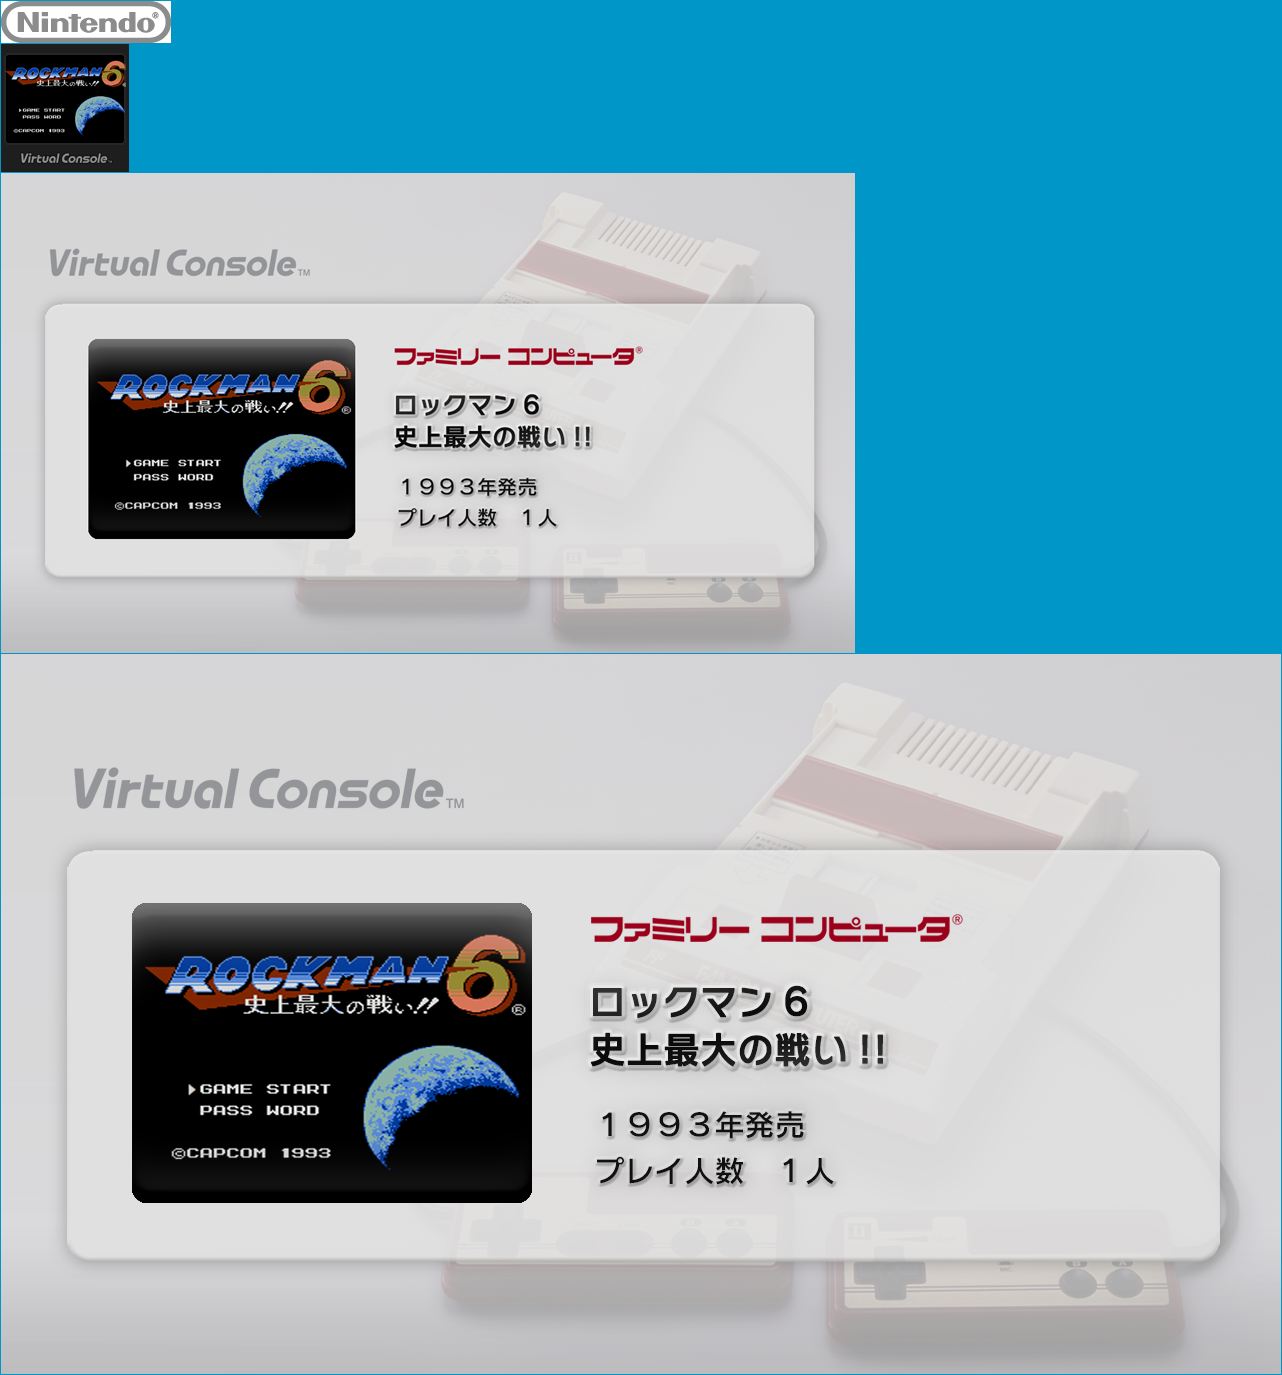 Virtual Console - Rockman 6: Shijō Saidai no Tatakai!!